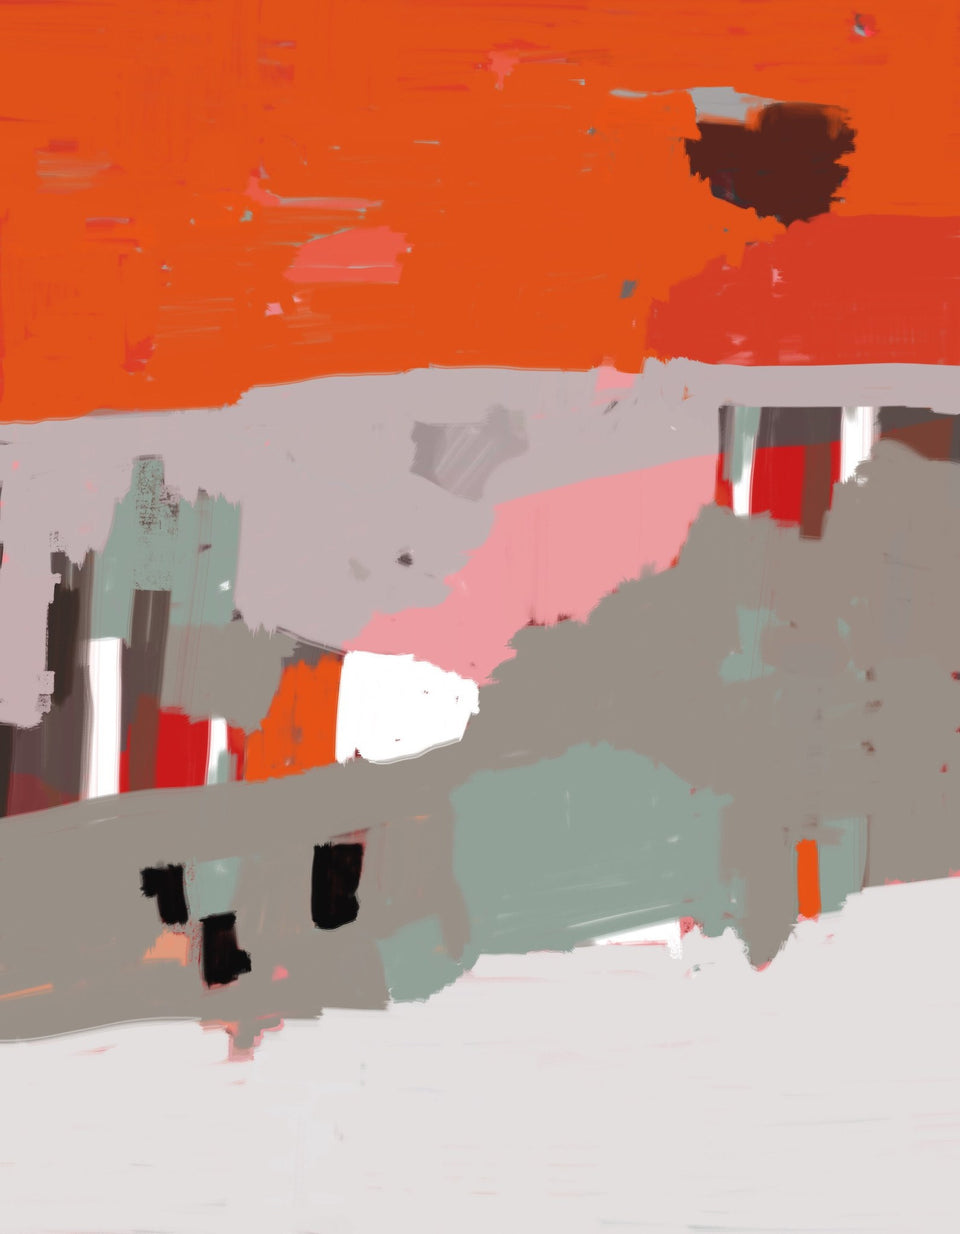  Paysage abstrait coloré orange gris ocre - Tableau design  artiste peintre Octave Pixel  galerie TACT Art abstrait & contemporain